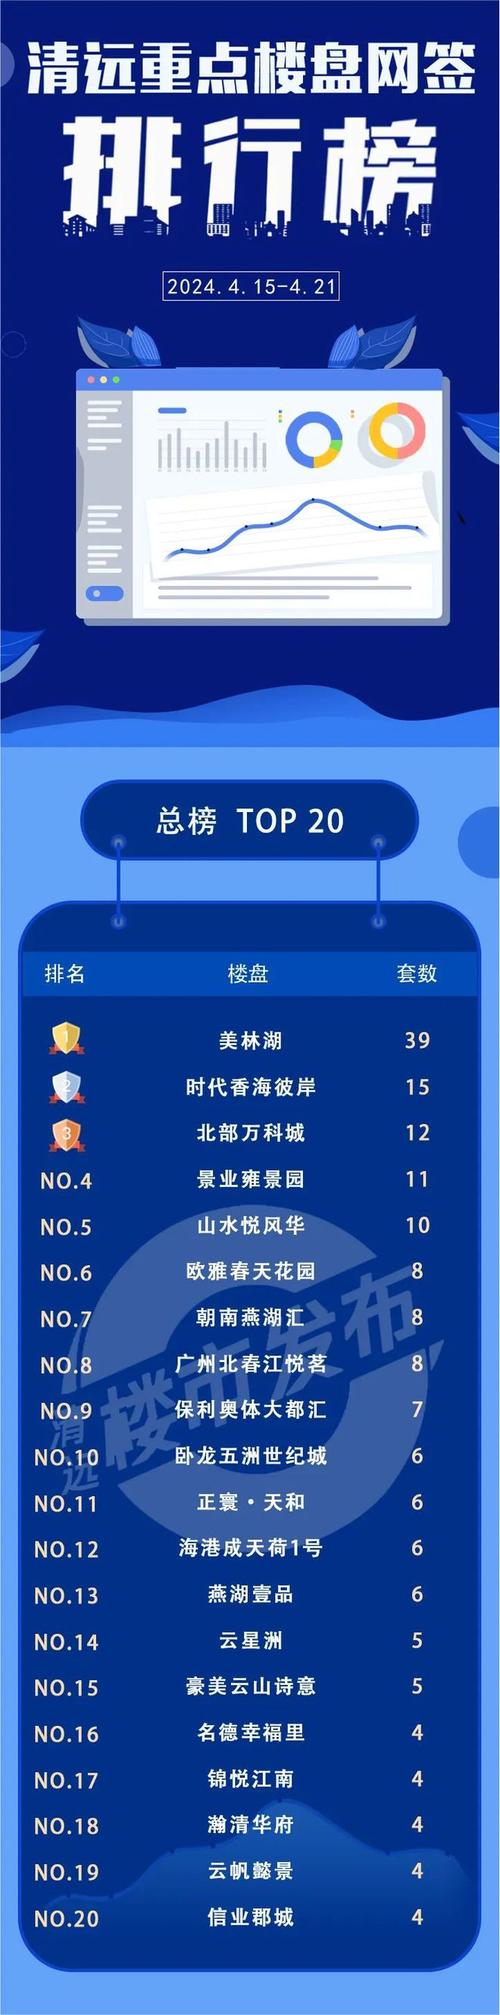 15-4.21 清远网签排行:美林湖夺冠!